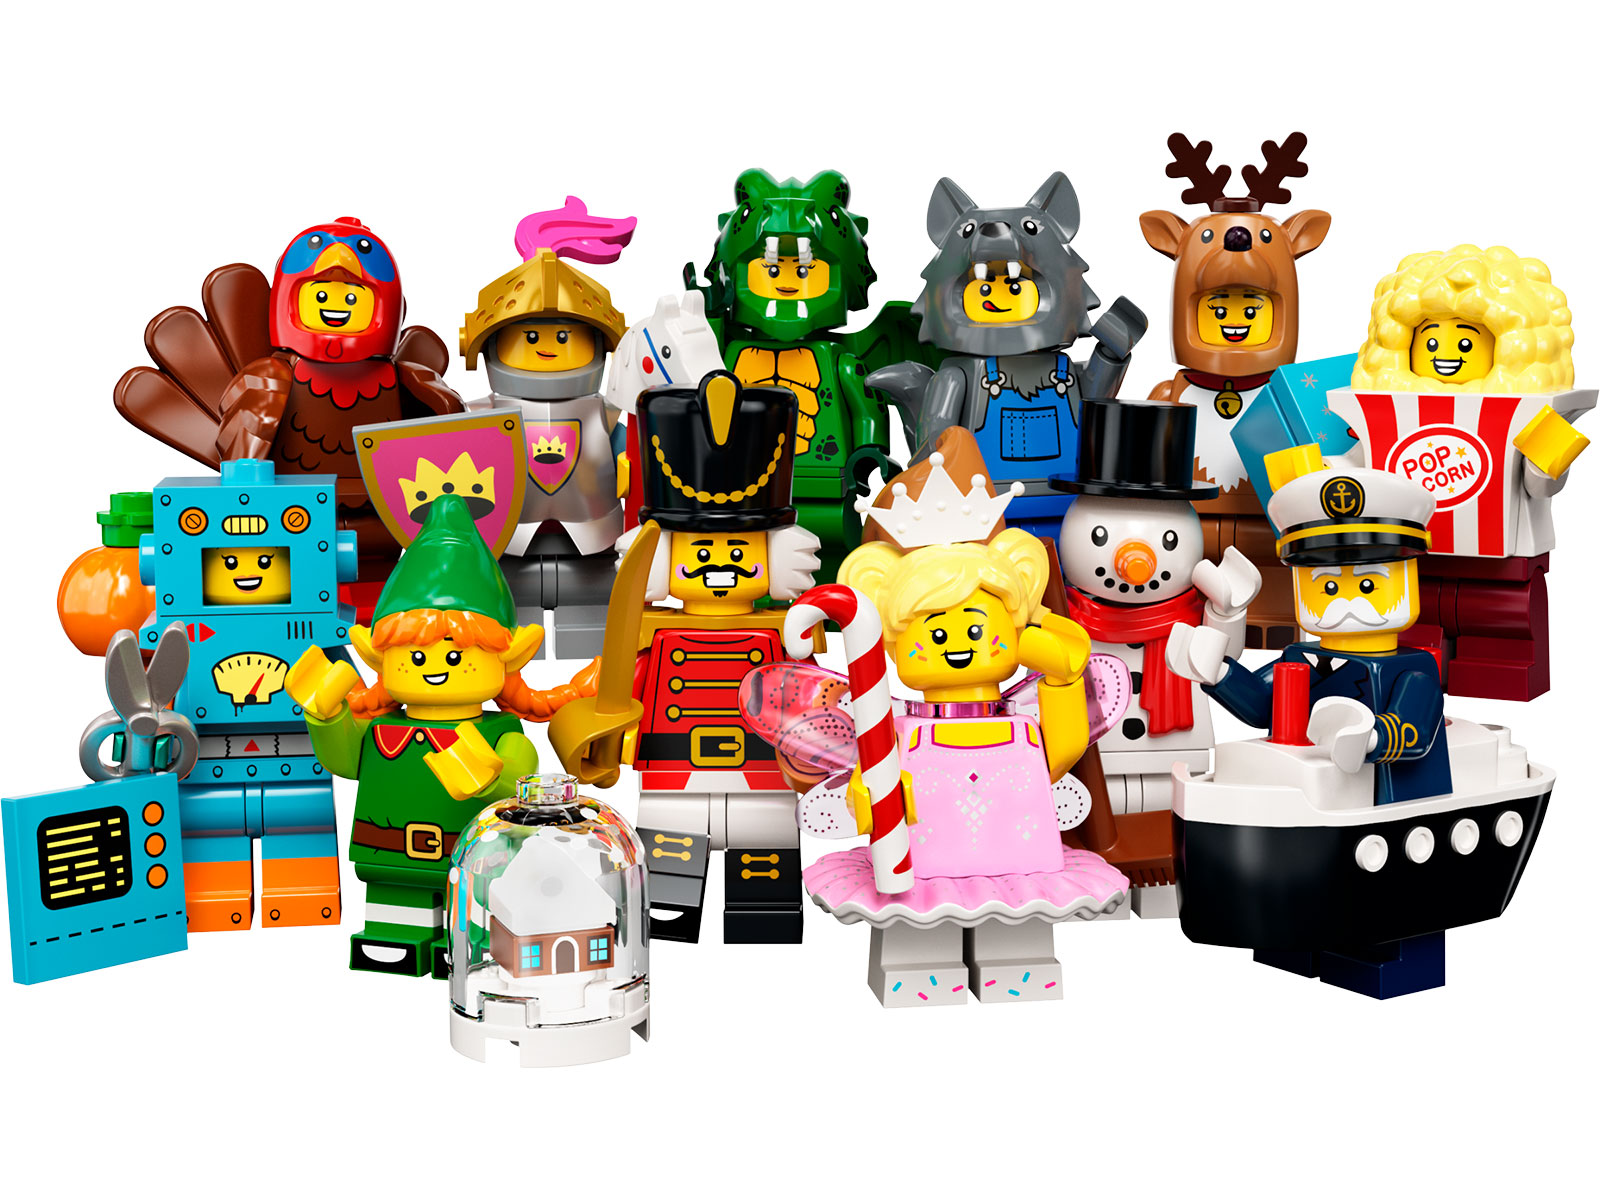 LEGO® Minifiguren 71036 - Serie 23 - 6er Pack